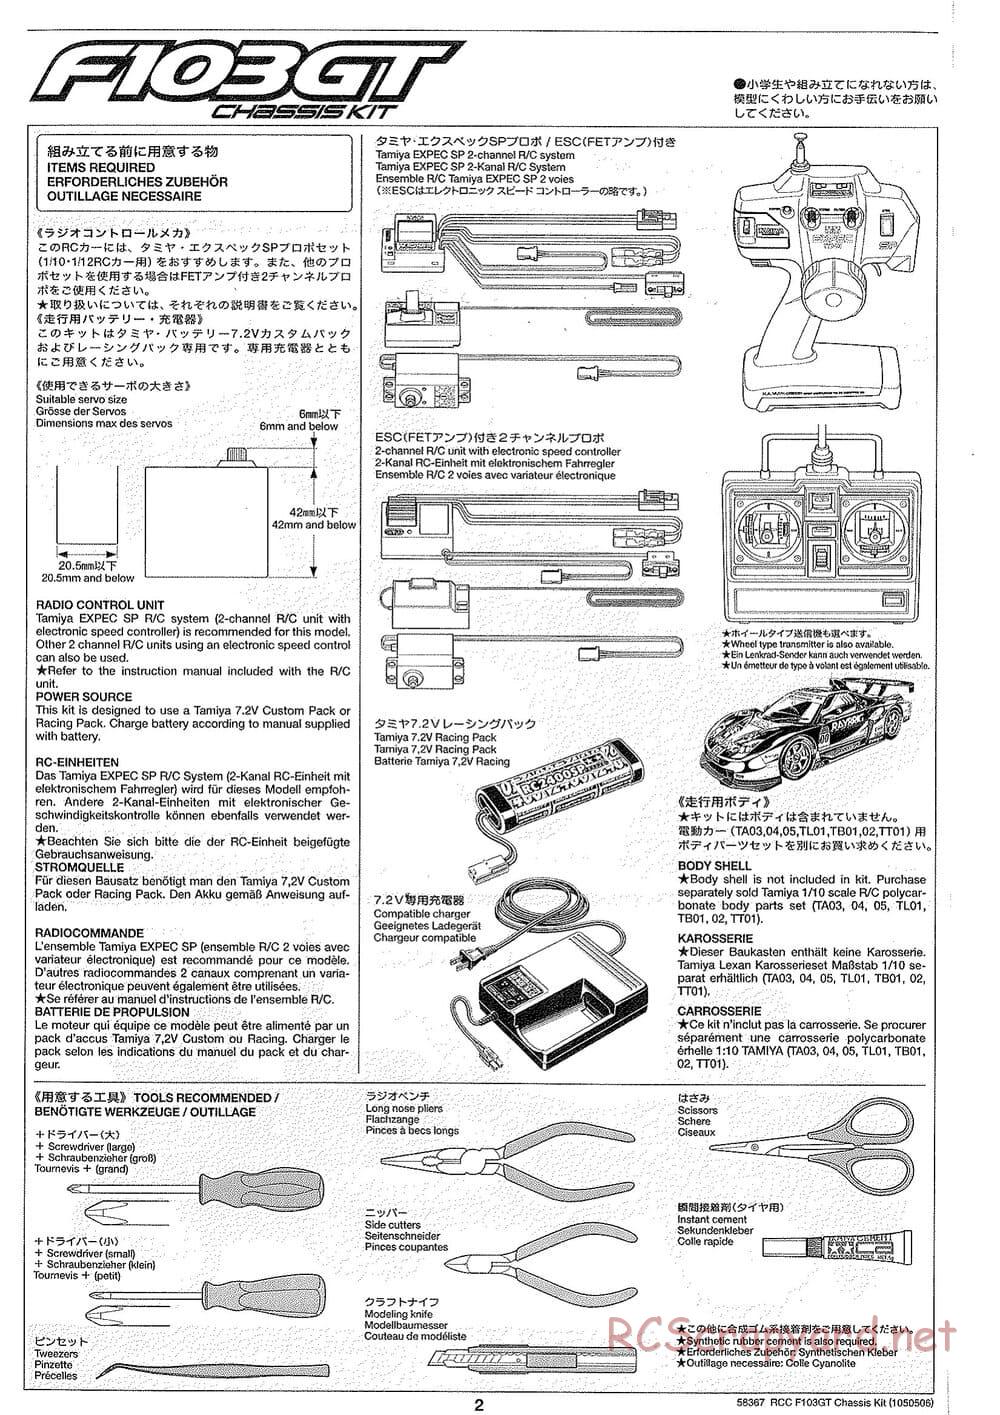 Tamiya - F103GT Chassis Kit - Manual - Page 2